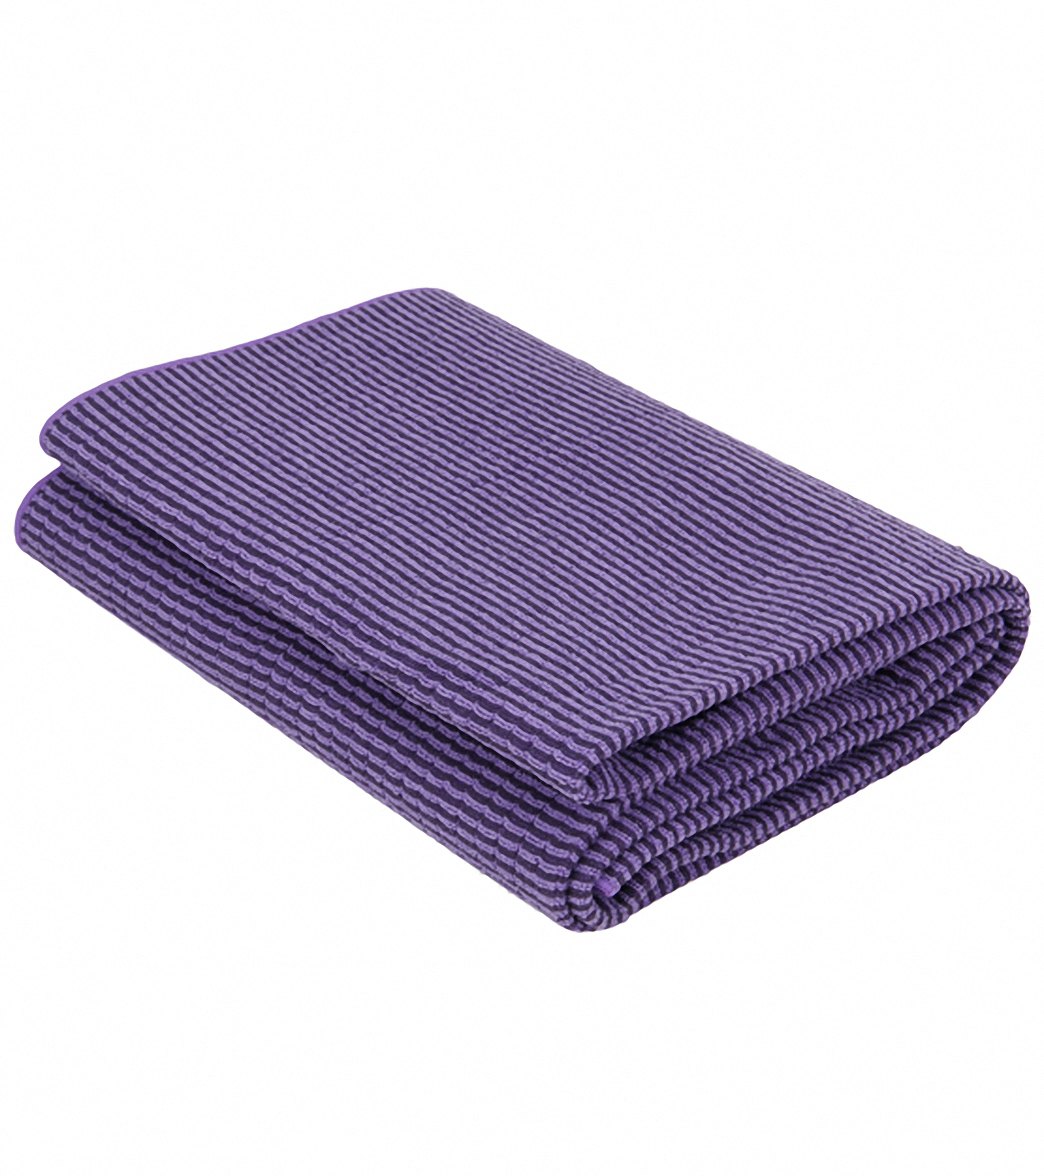 YogaRat towel review - 72 x 24 microfiber towel 